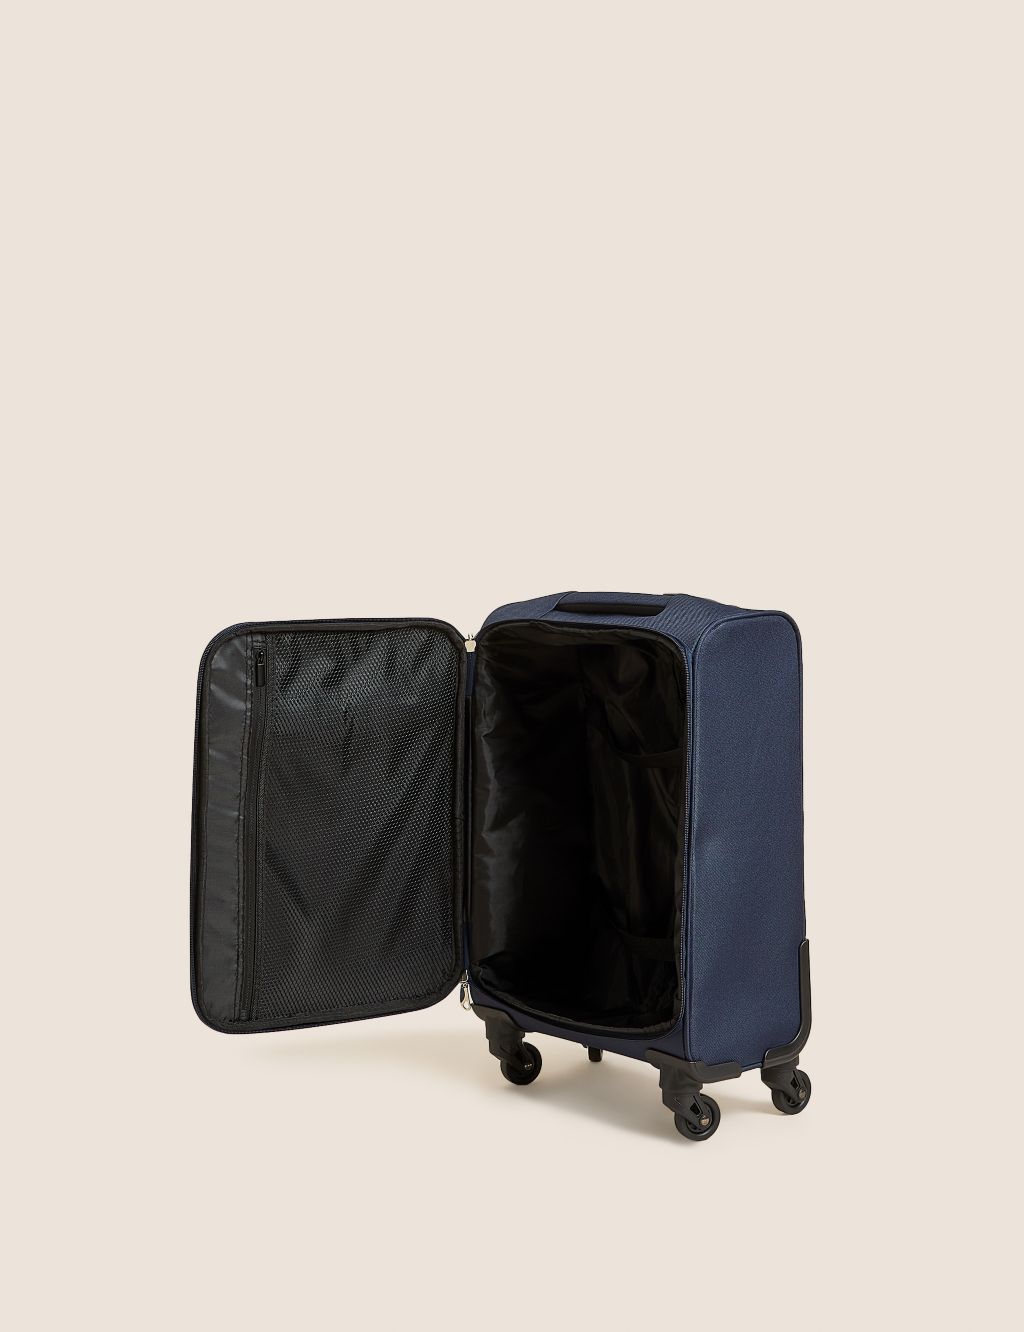 Palma 4 Wheel Soft Cabin Suitcase image 6